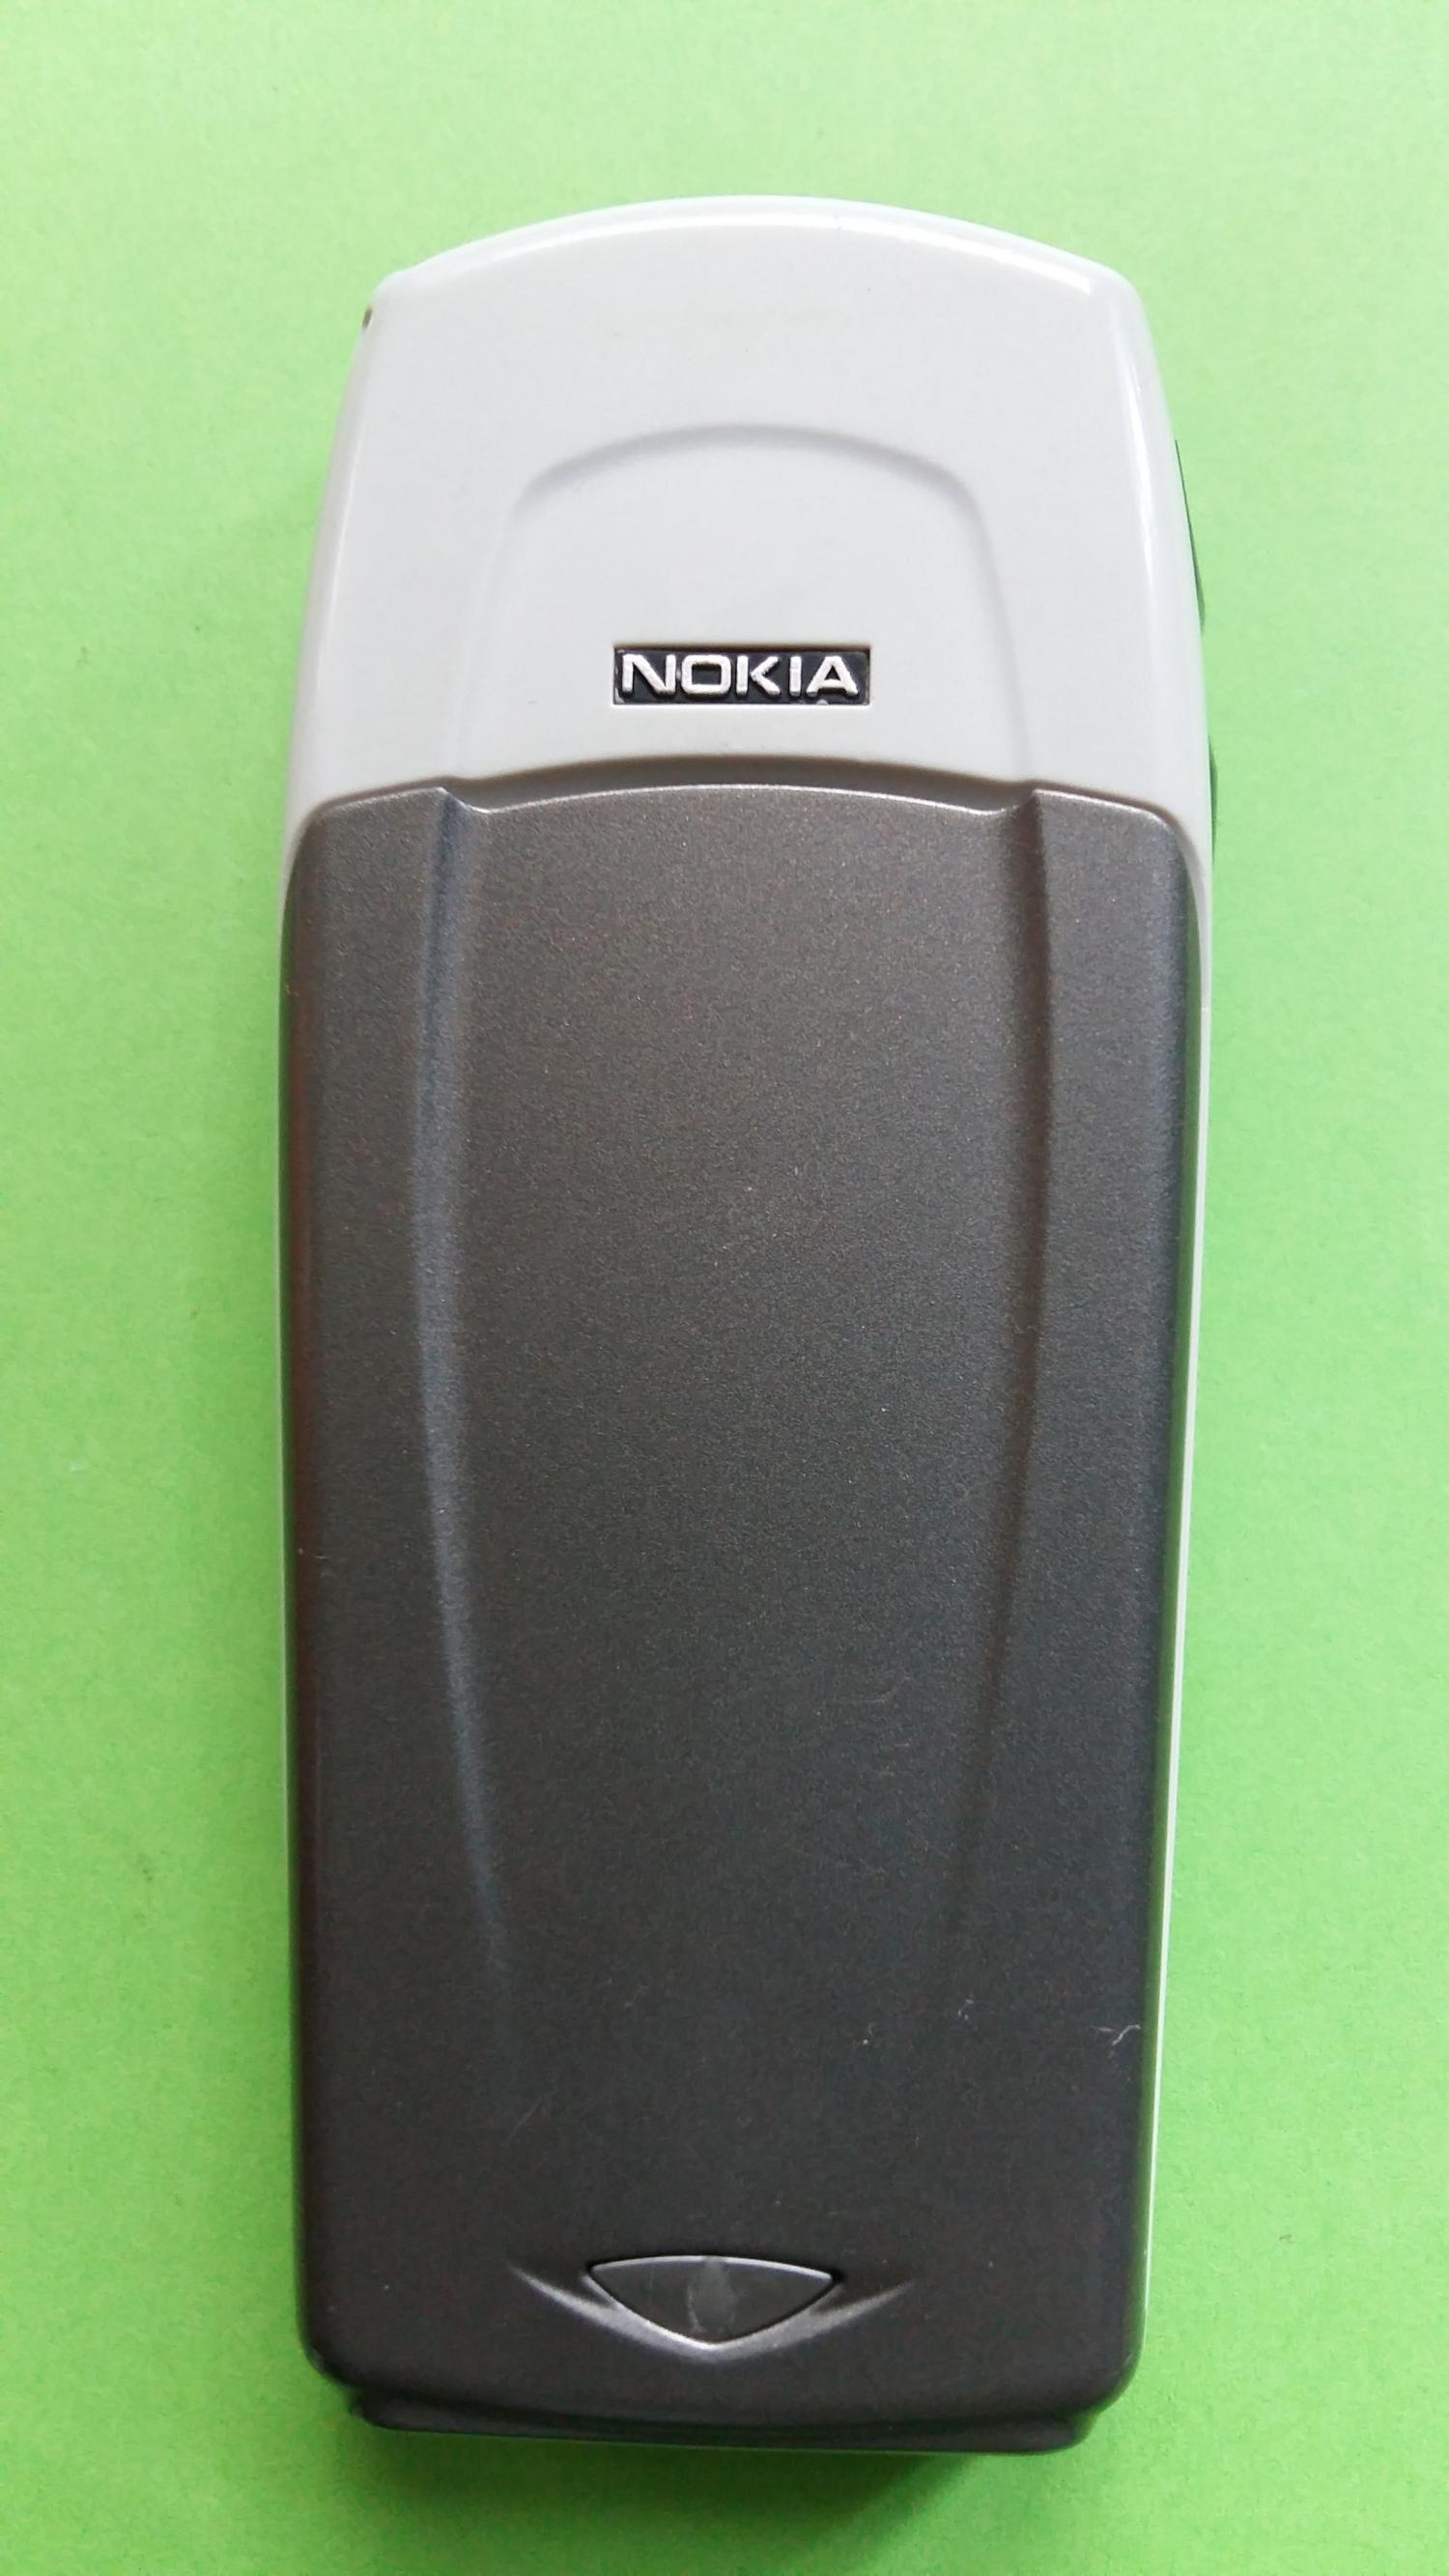 image-7328101-Nokia 6100 (10)2.jpg